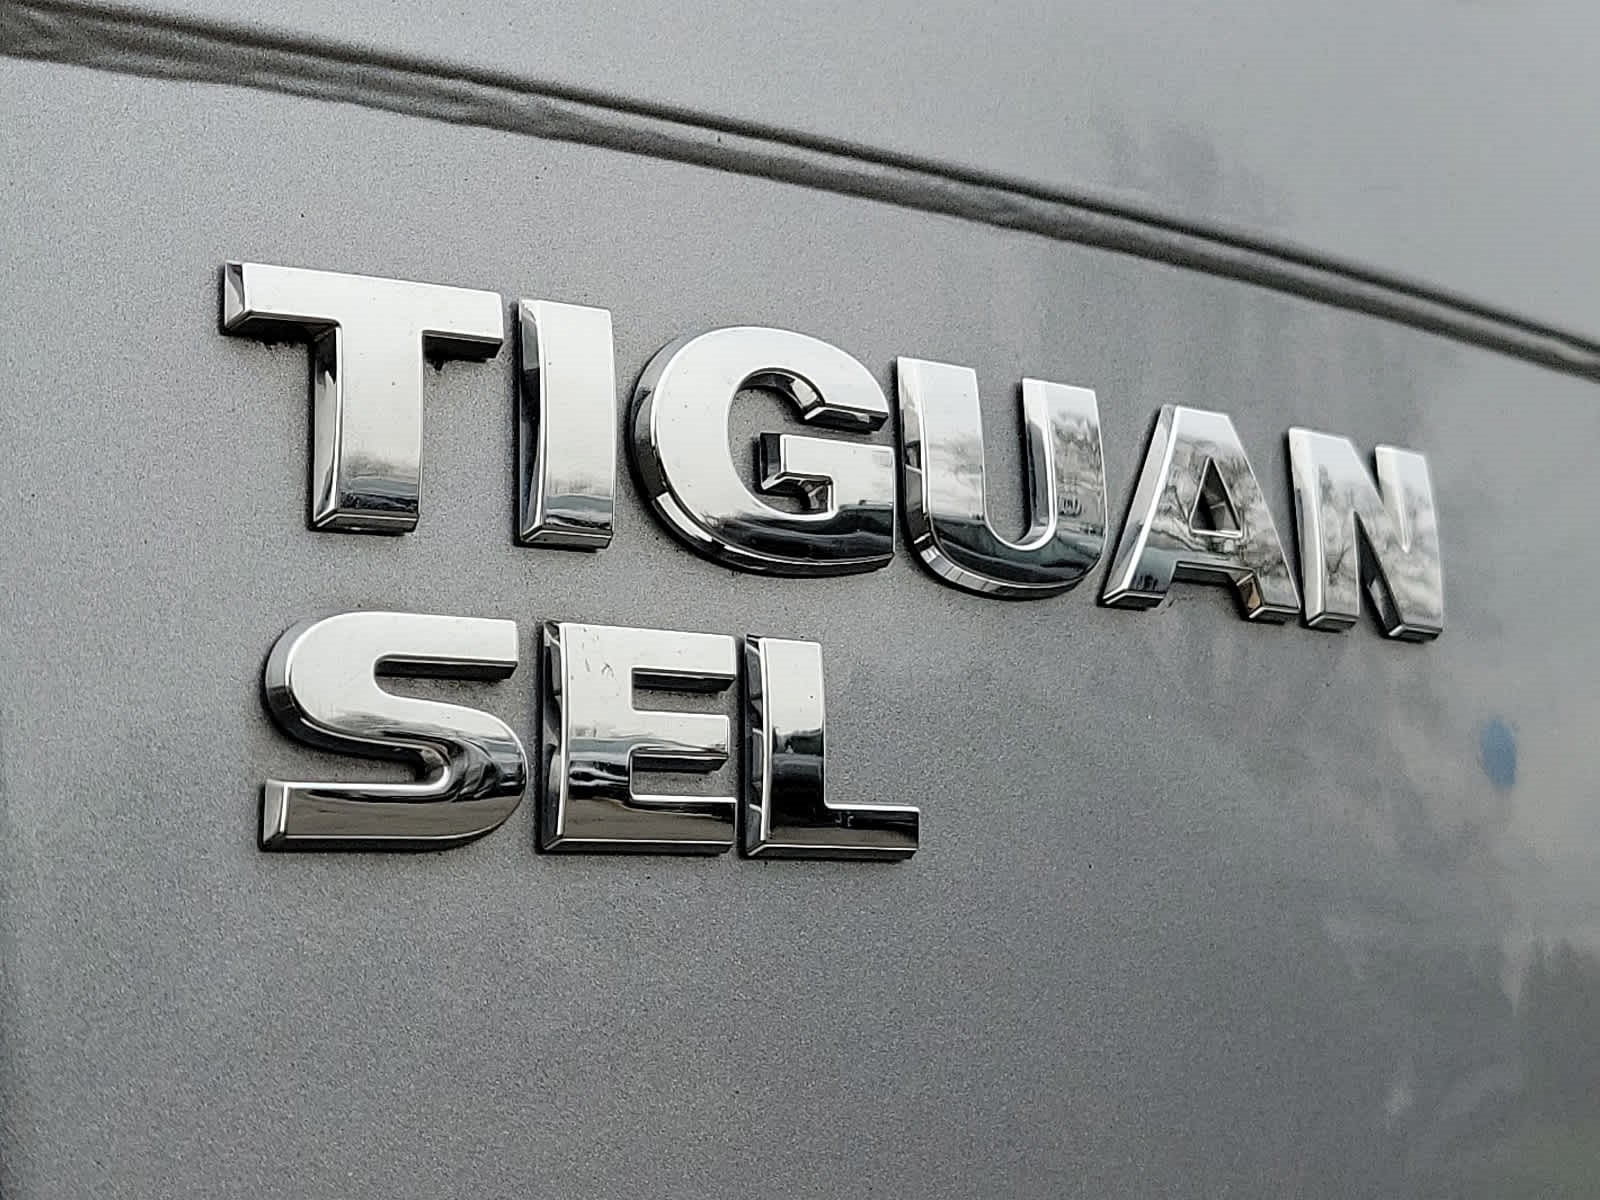 2021 Volkswagen Tiguan 2.0T SEL 4MOTION